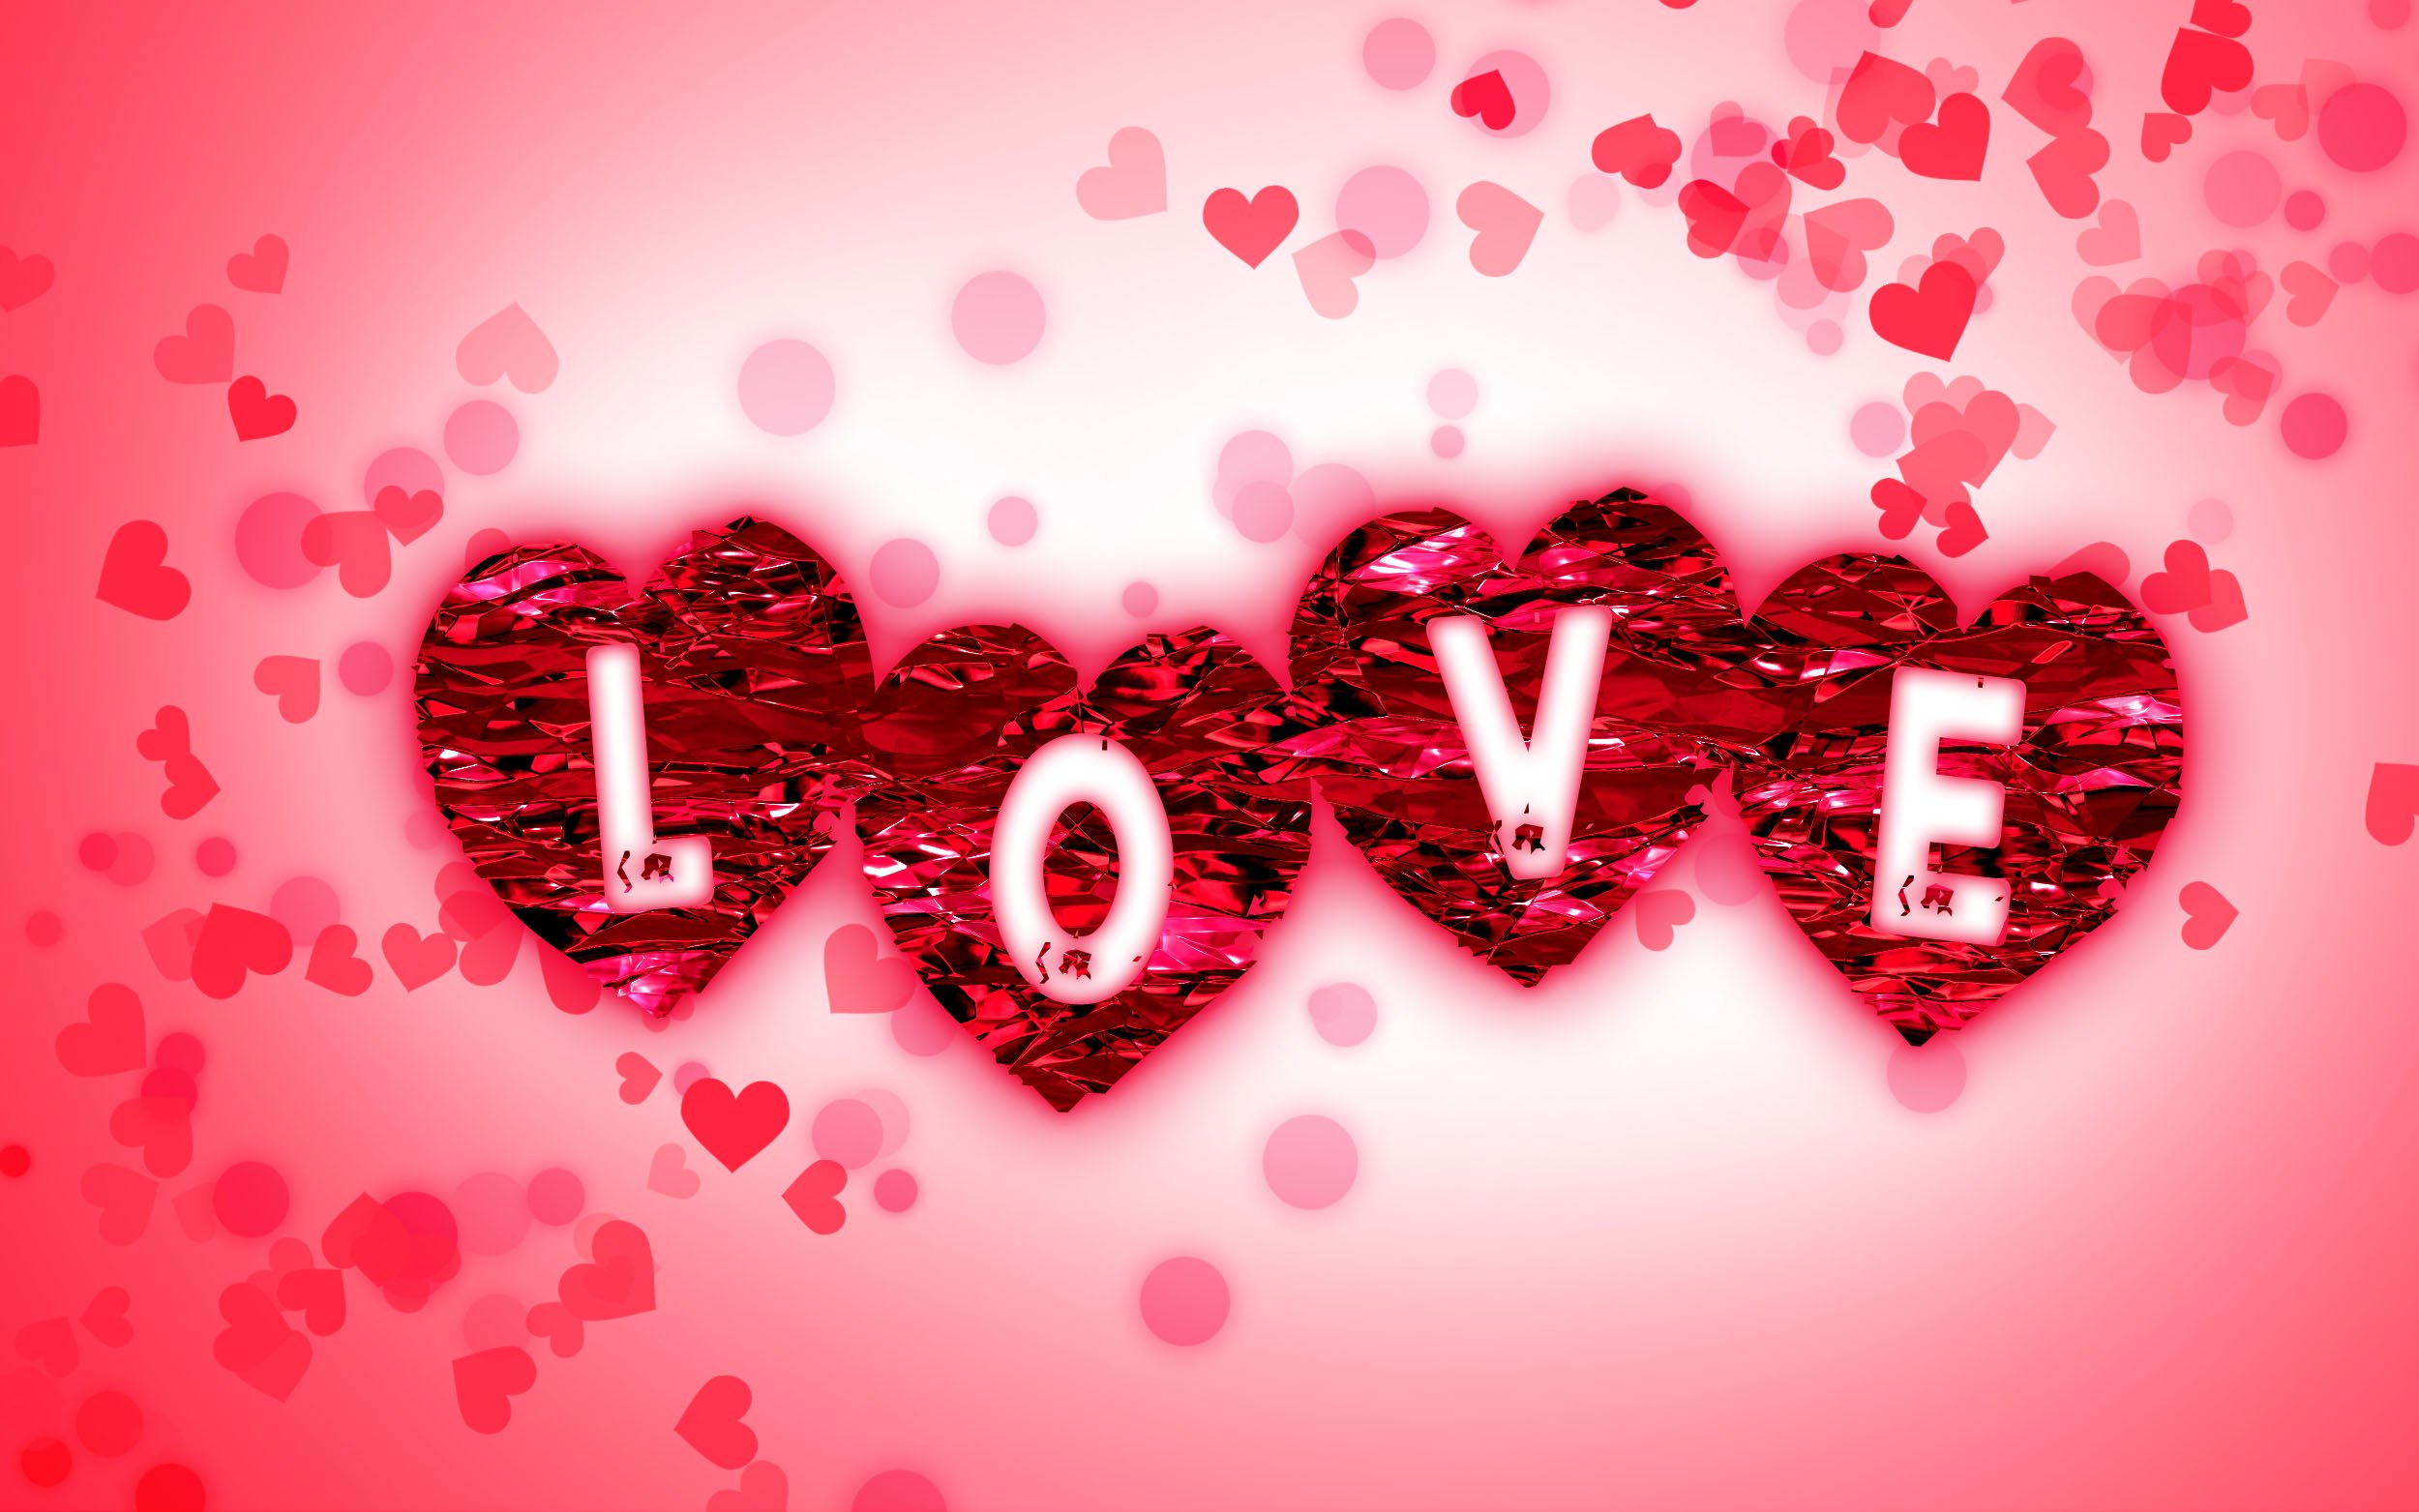 Ngày lễ tình nhân sẽ đến rất gần, hãy cùng chiêm ngưỡng những hình ảnh Valentine Hearts đầy lãng mạn. Chắc chắn bạn sẽ yêu thích chúng ngay từ lần nhìn đầu tiên!